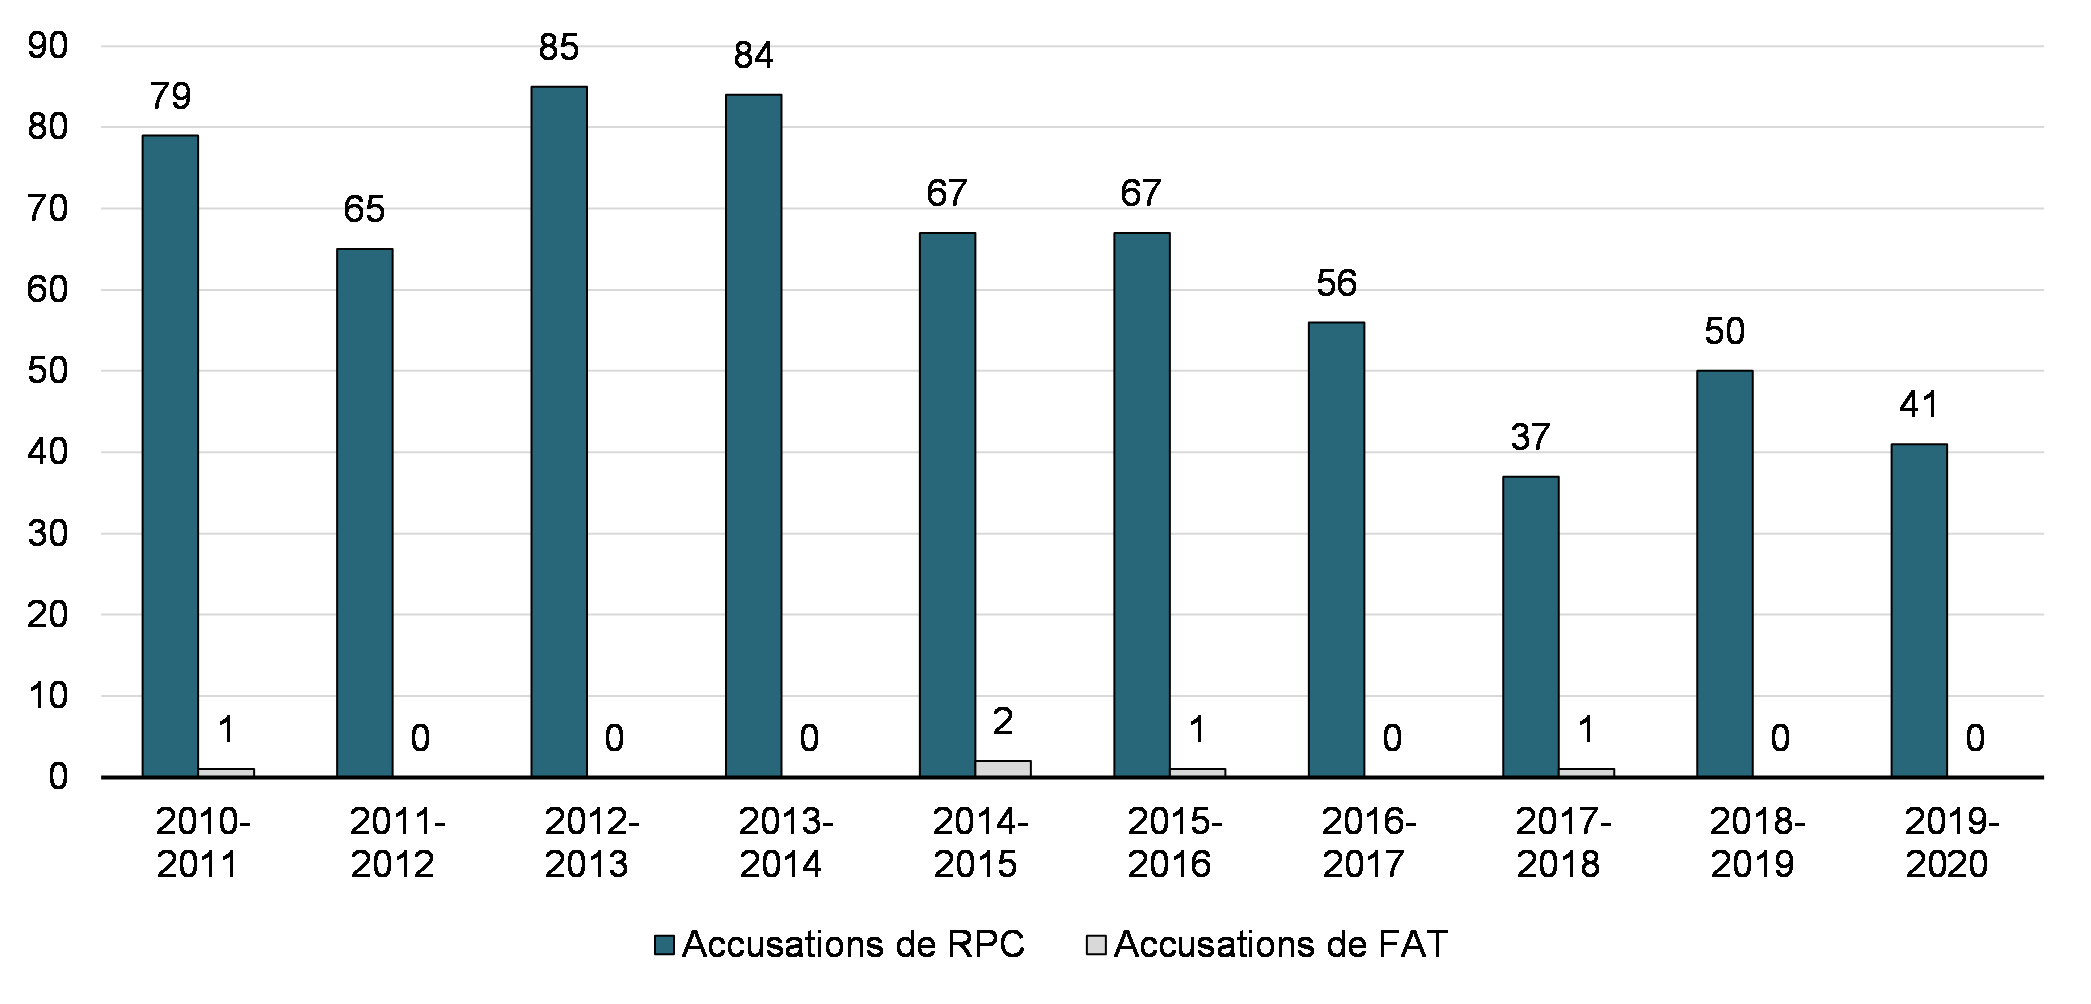 Graphique 4.8 : Accusations fédérales de RPC et de FAT par année (SPPC)

